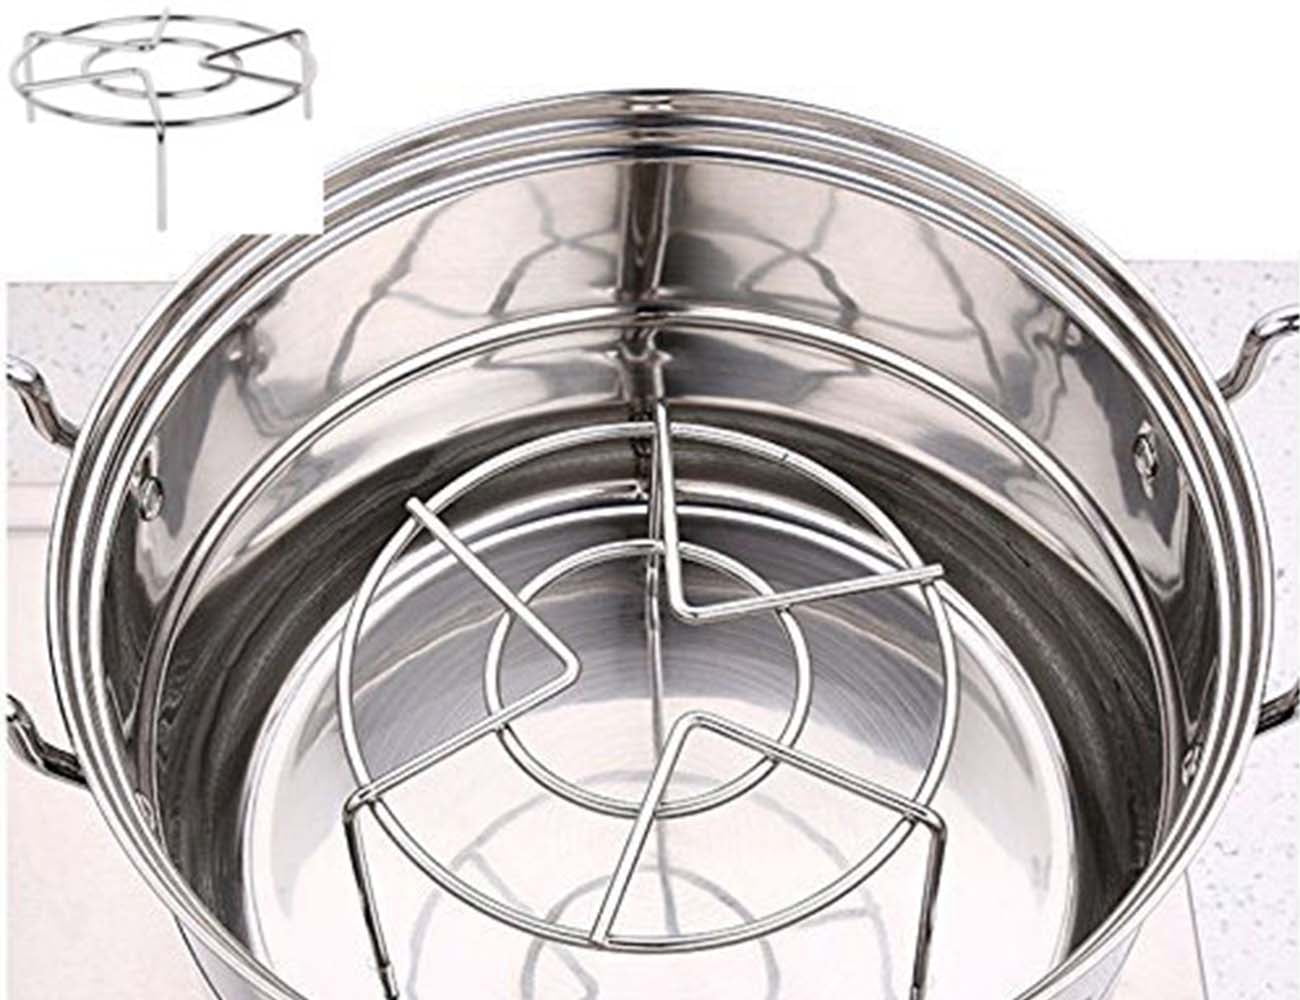 Heavy Duty Stainless Steel Metal Steam Rack Steamer Basket Pressure Cooker 